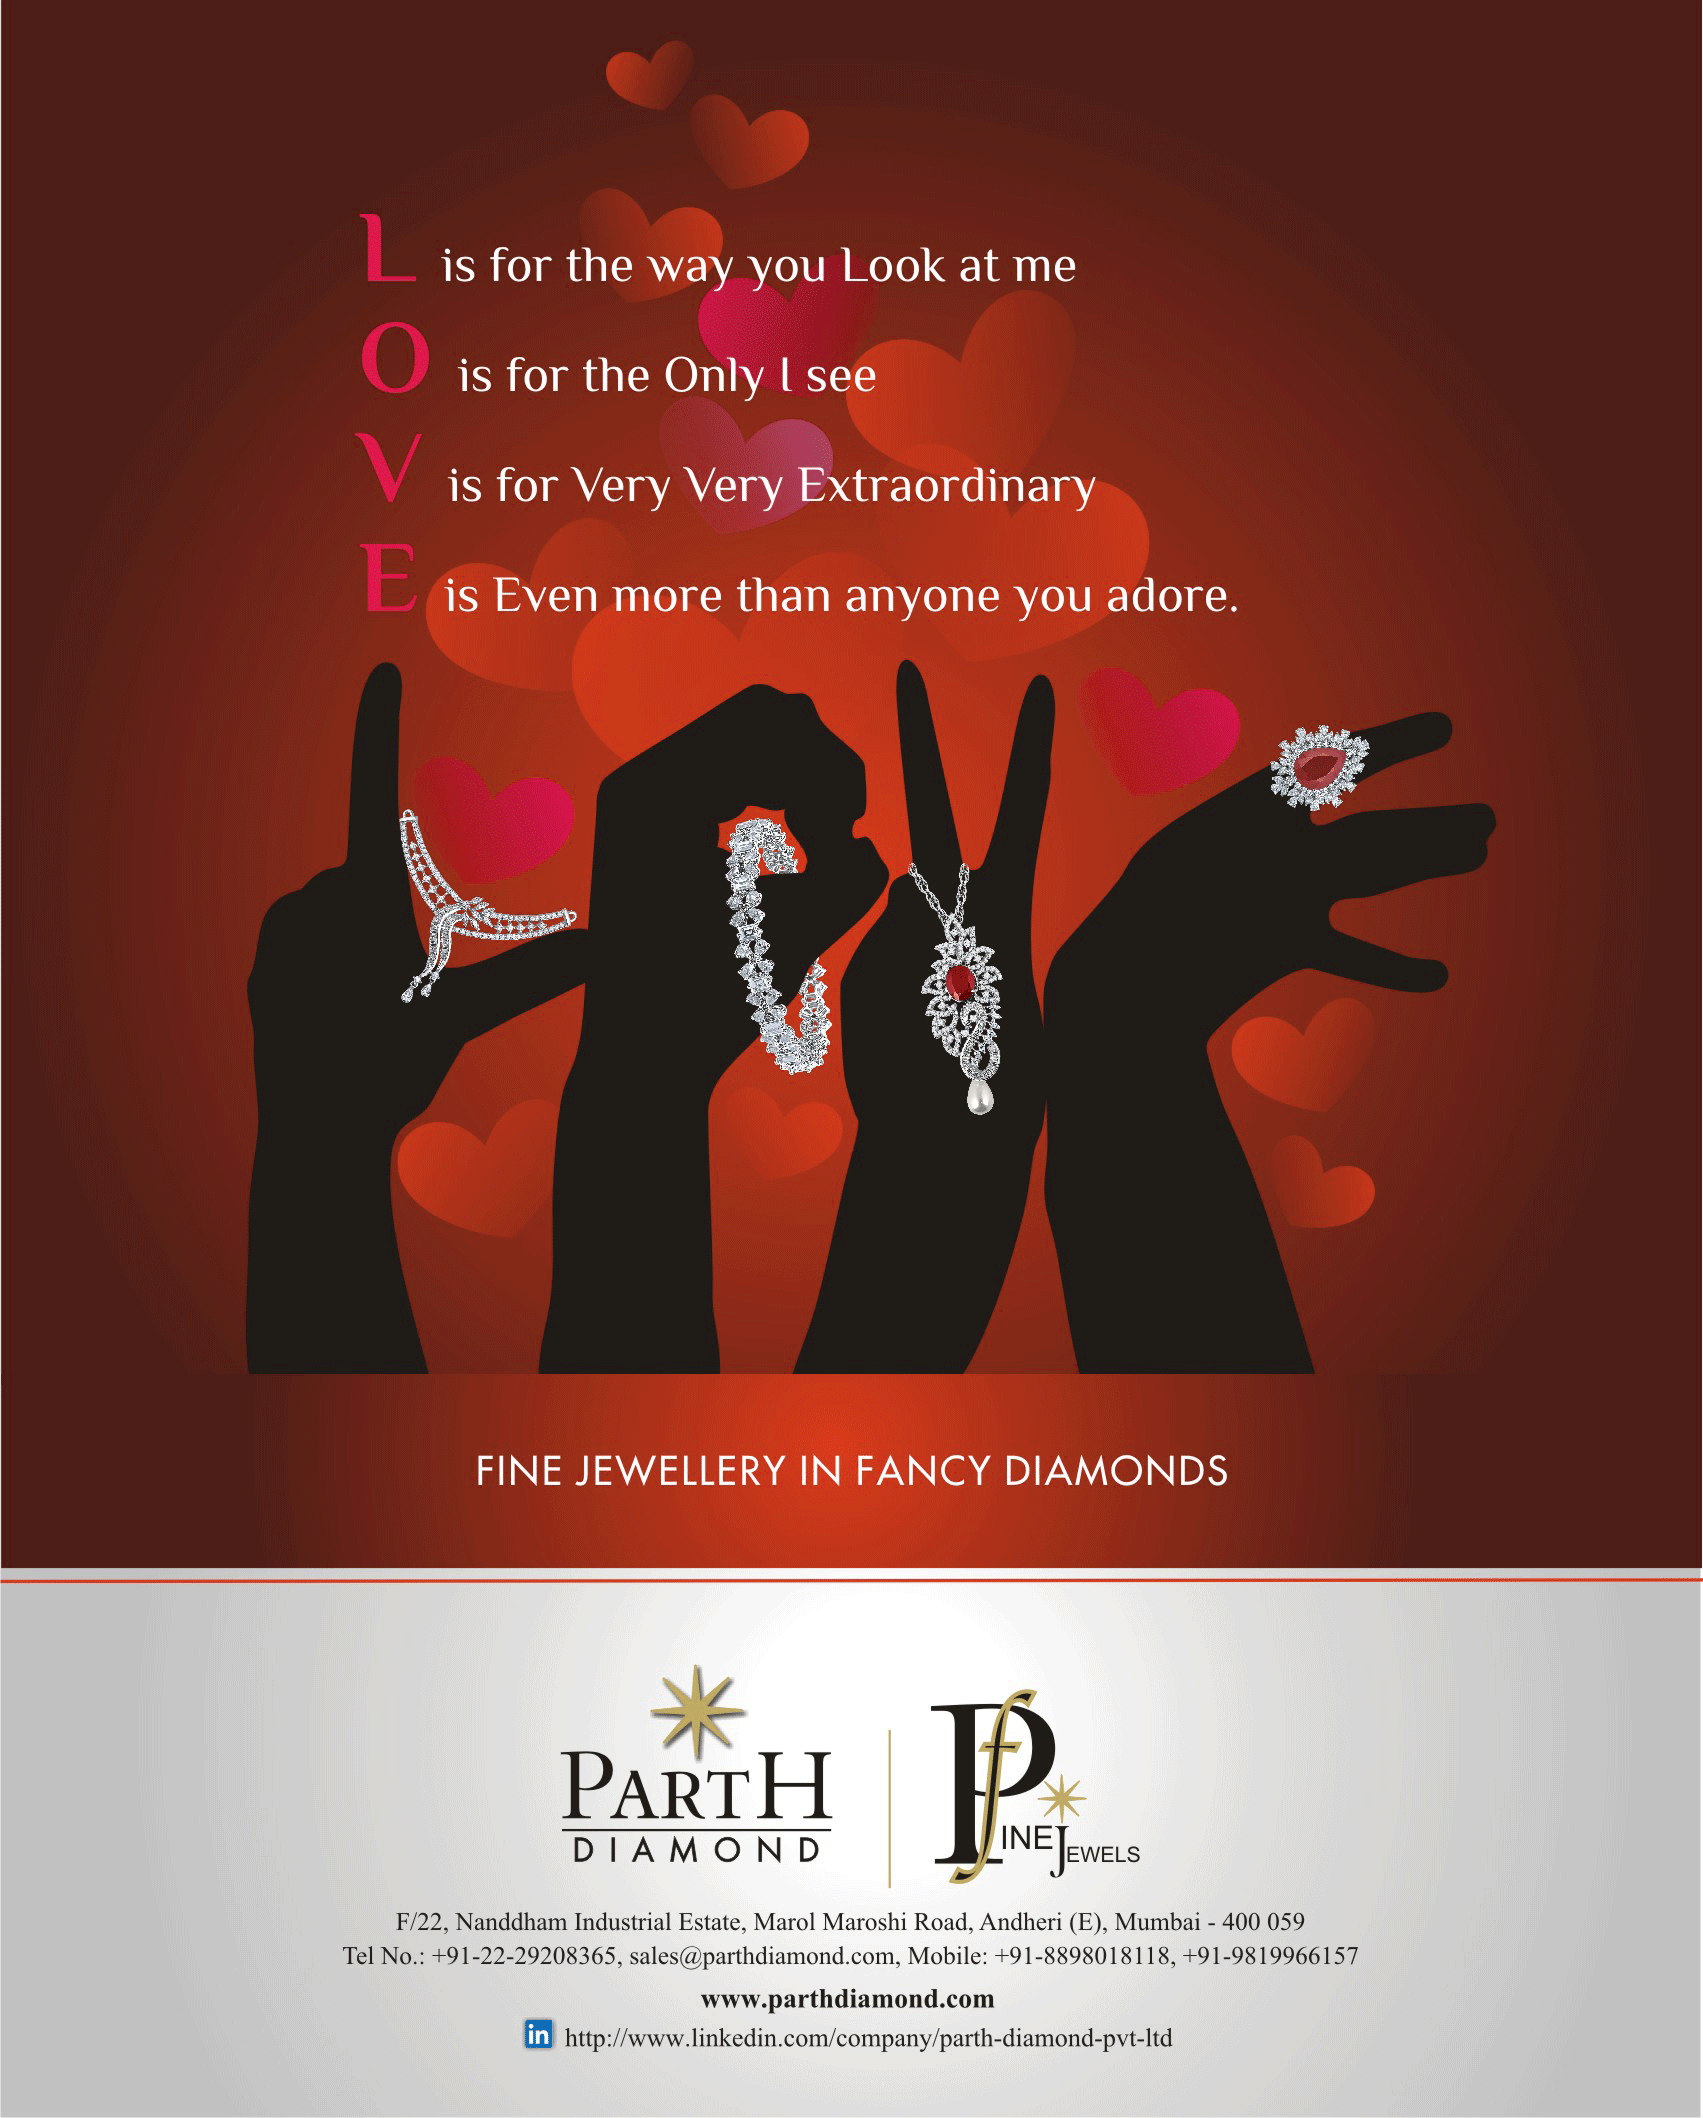 Parth Diamond Ad campaign